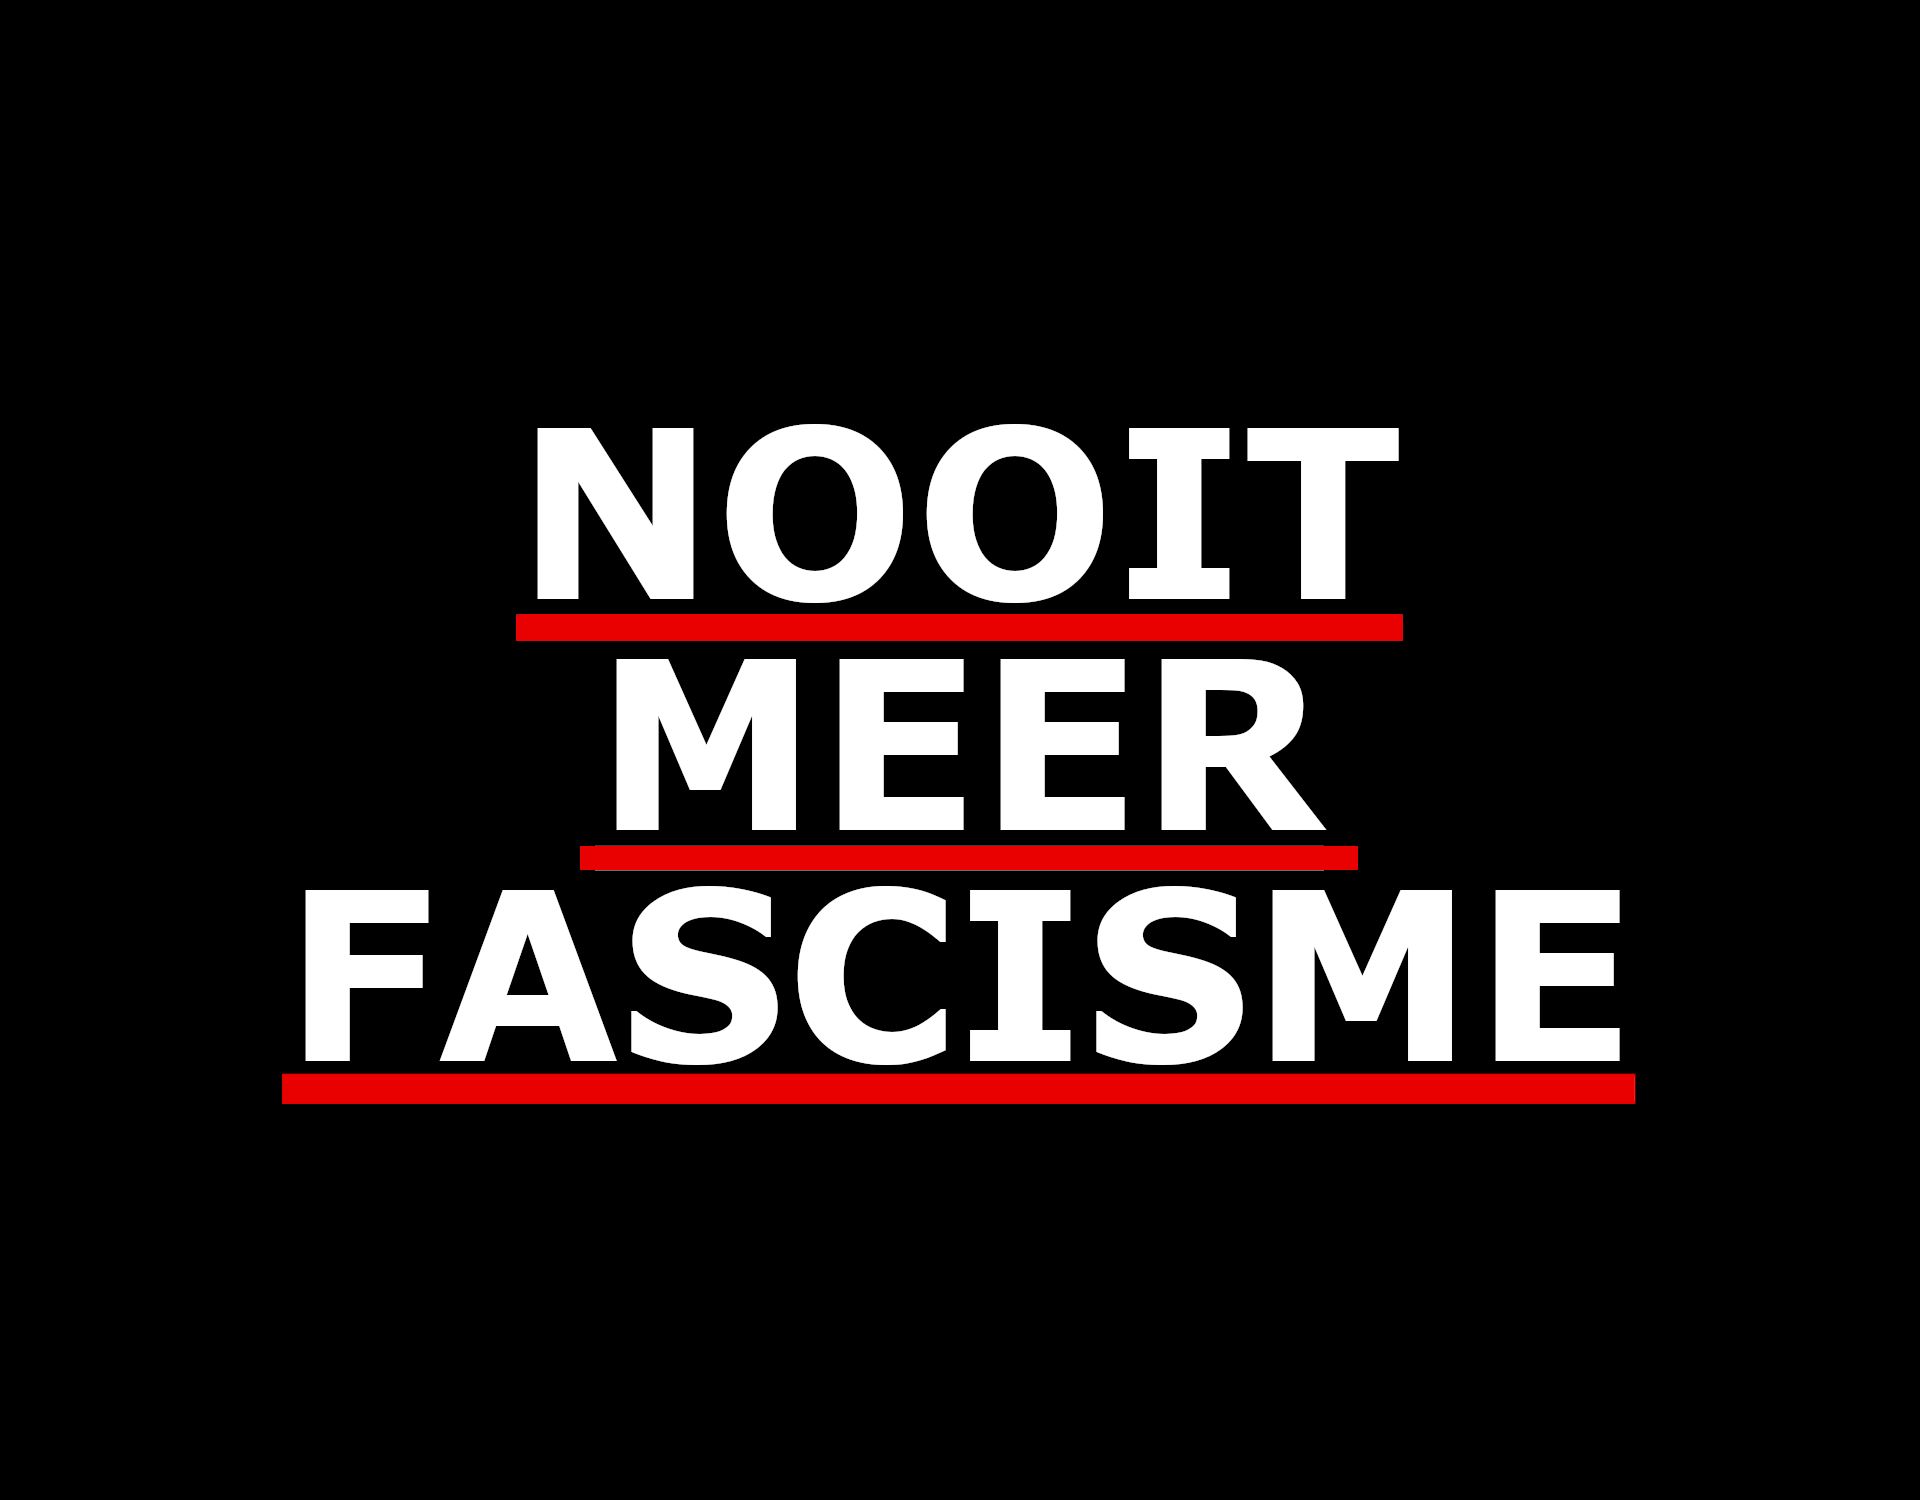 Witte letters met rode onderlijning op een zwarte achtergrond. Er staat 'Nooit meer fascisme', geschreven in hoofdletters.